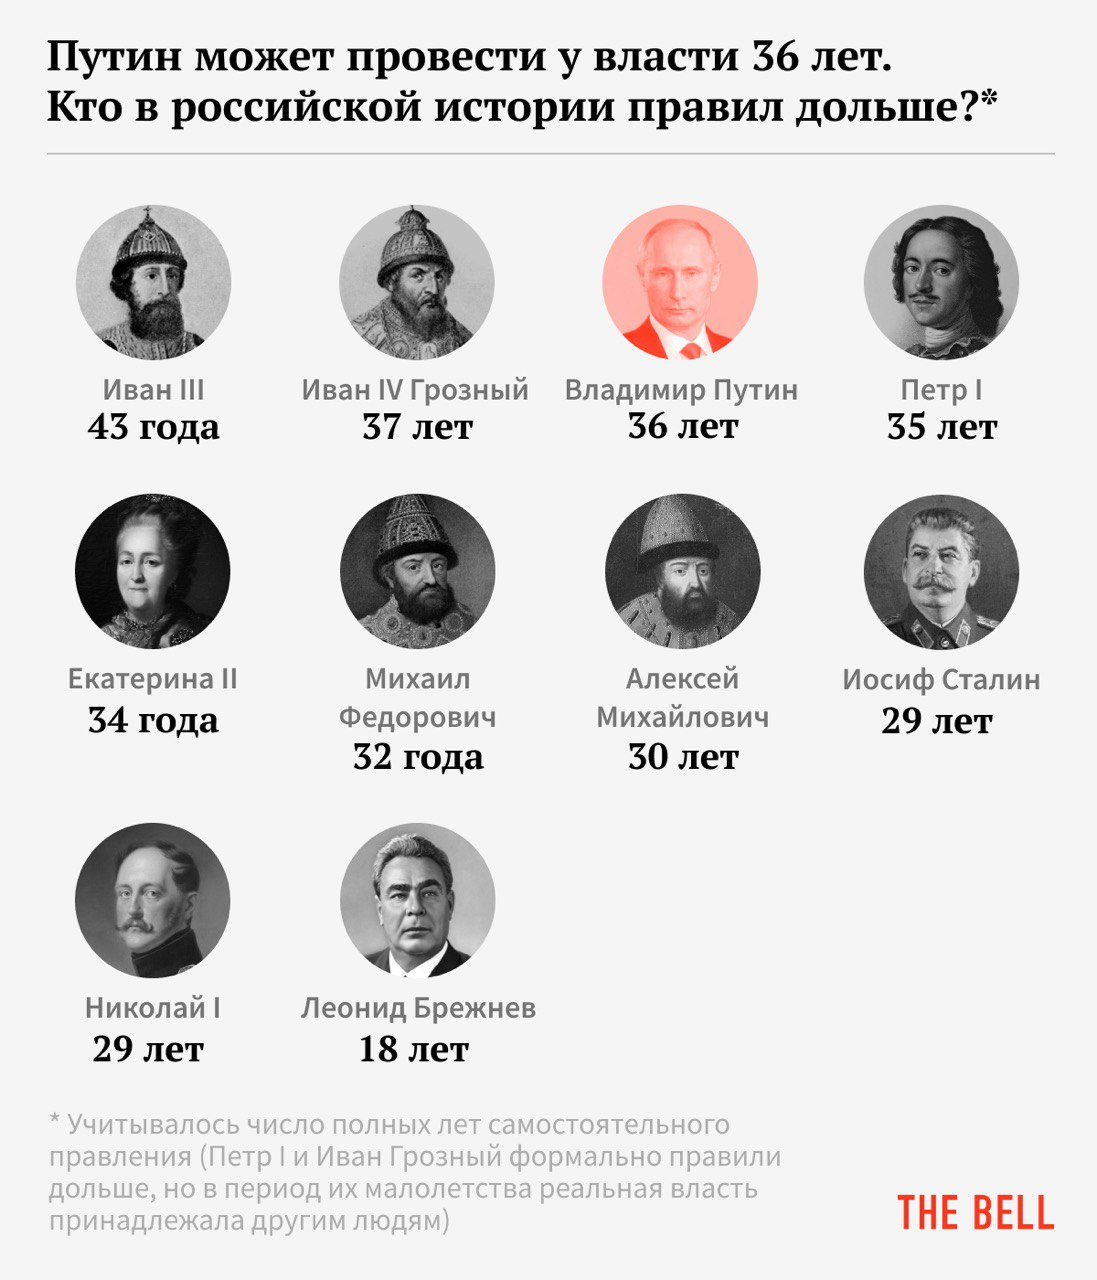 Издание The Bell сравнило возможный срок правления Владимира Путина и других глав государства. Тех, кто был у власти дольше, оказалось не так уж и много